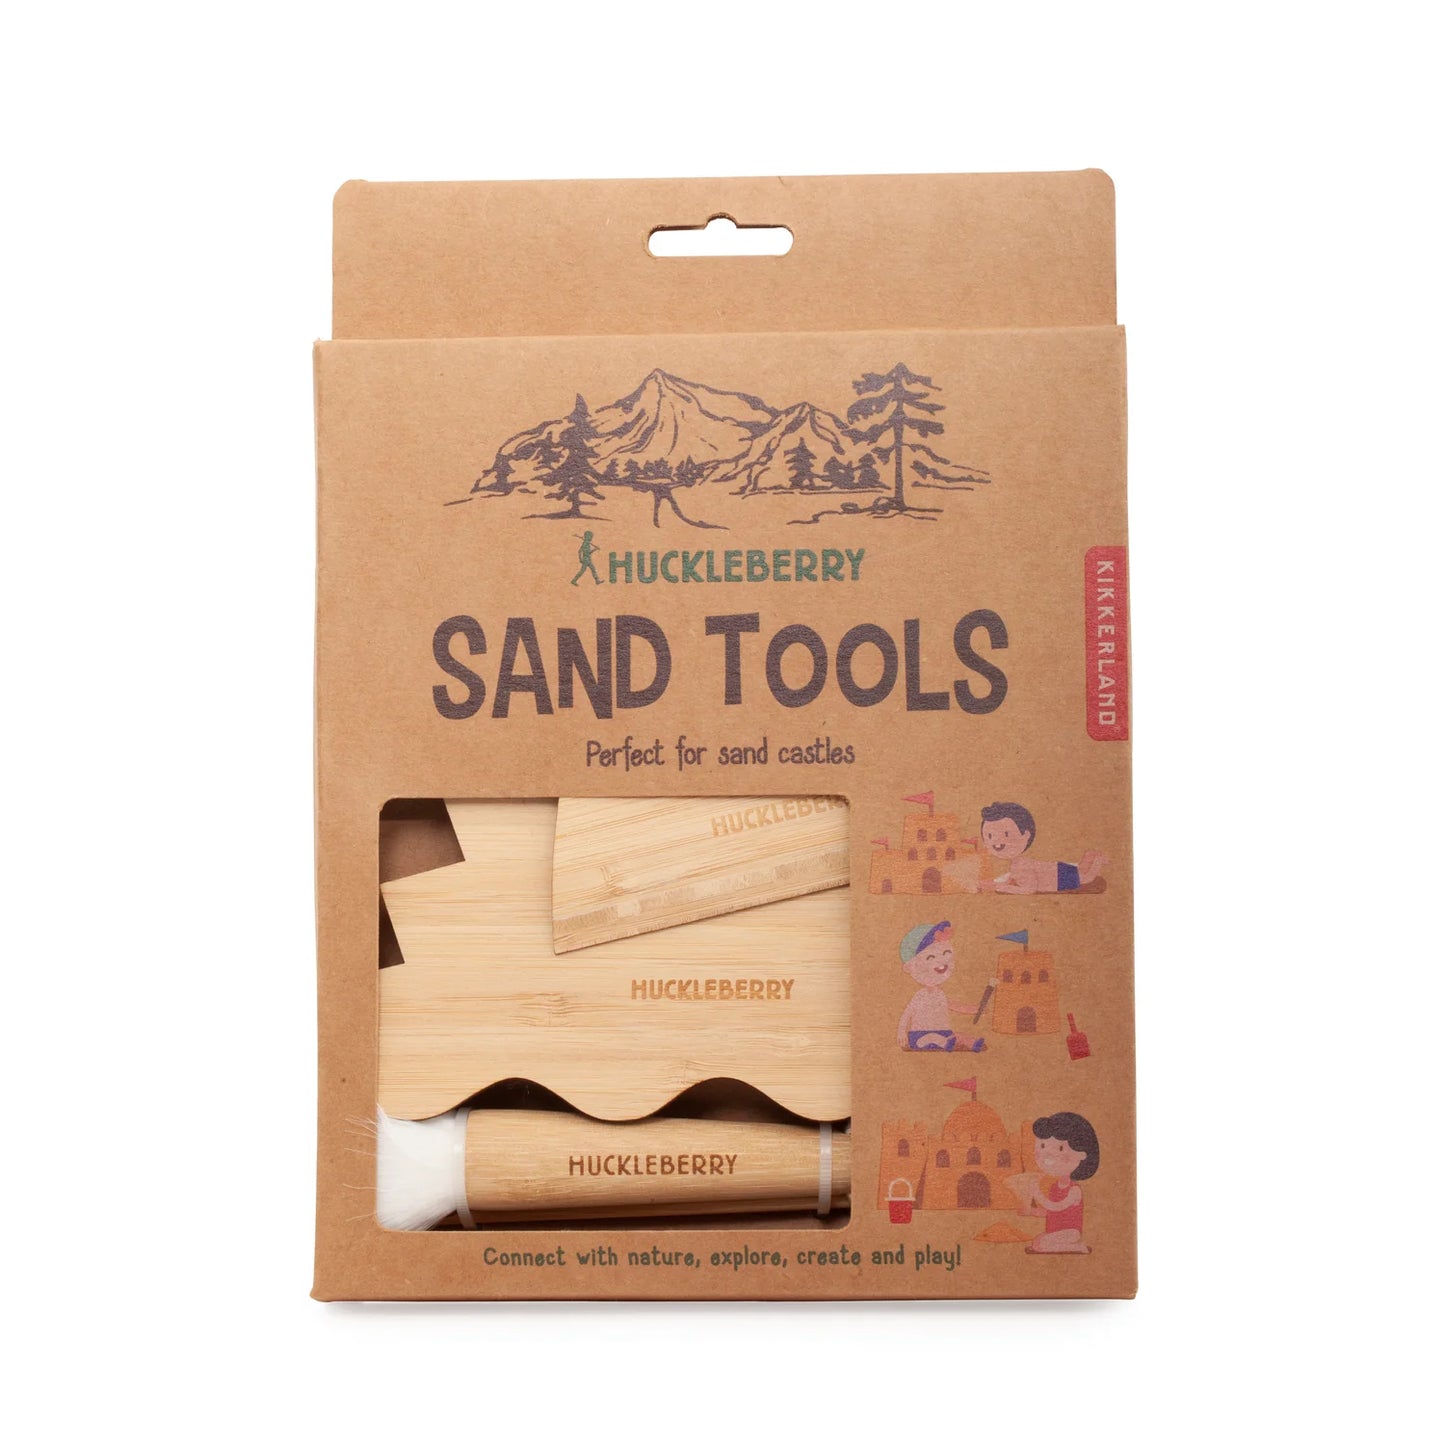 Sand Tools - Das ultimative Set für kleine Baumeister